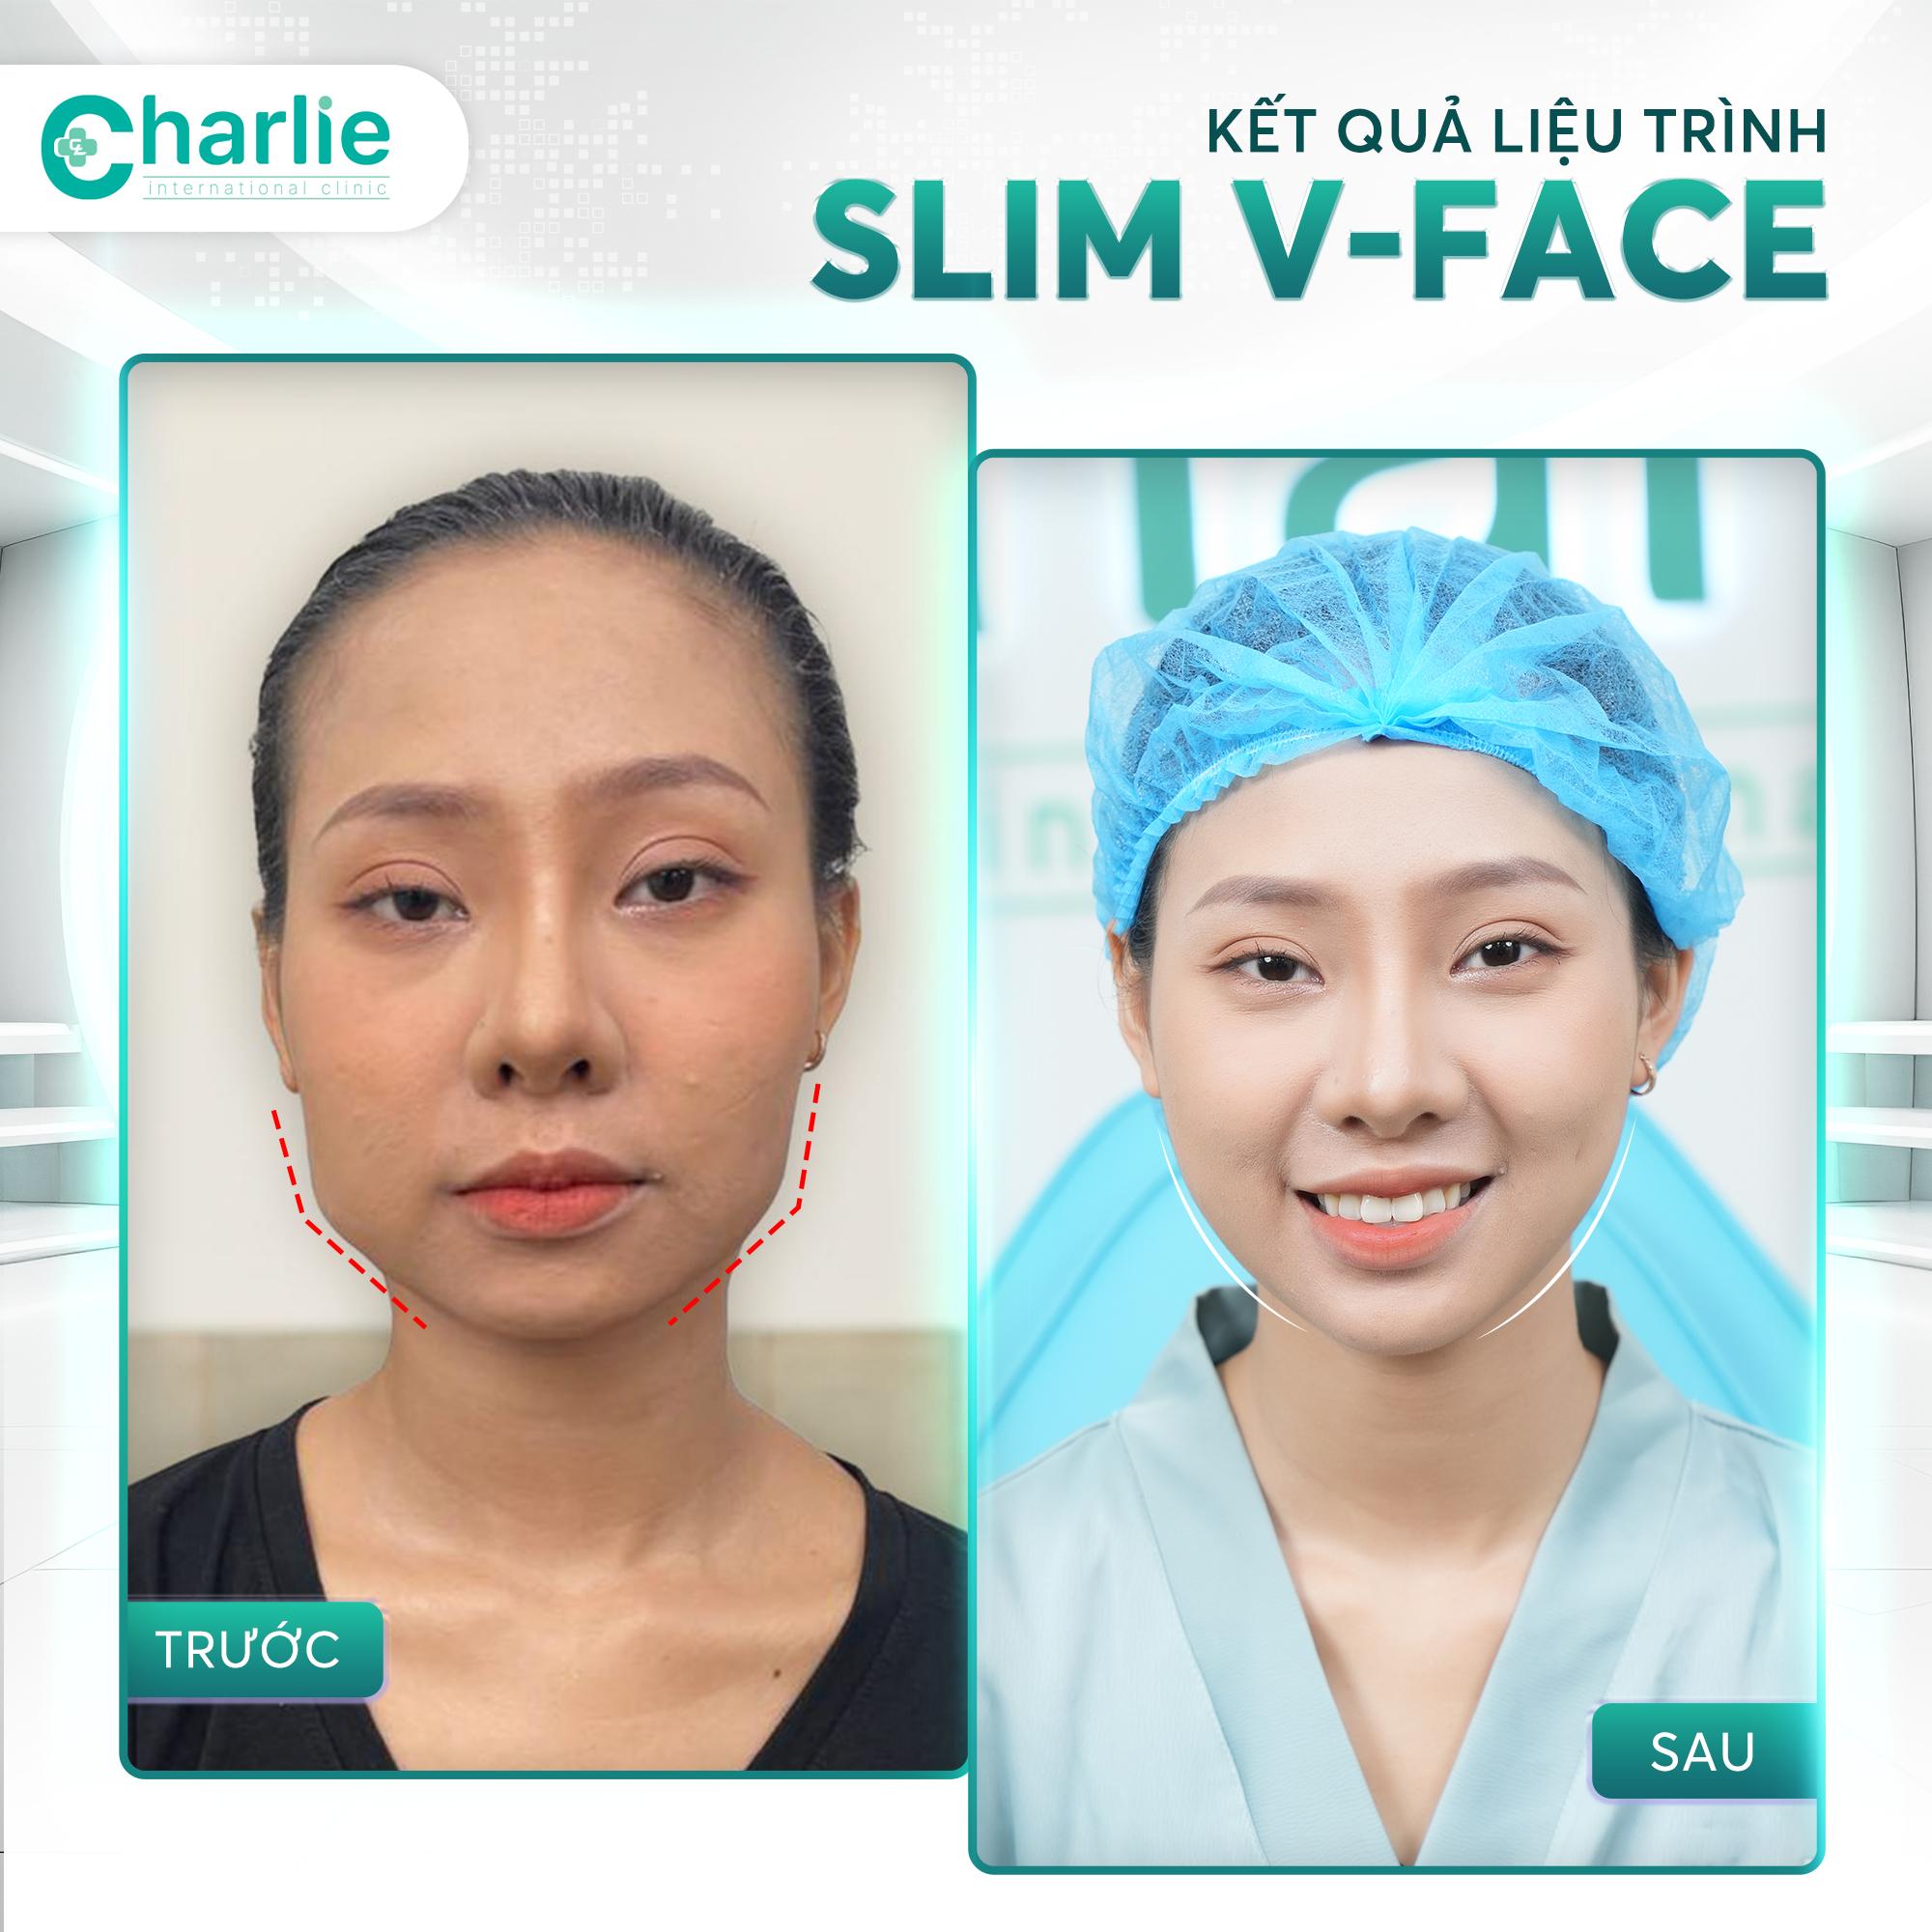 Phòng khám Charlie tiên phong công nghệ Thon gọn hàm Slim V-Face không cần phẫu thuật- Ảnh 3.